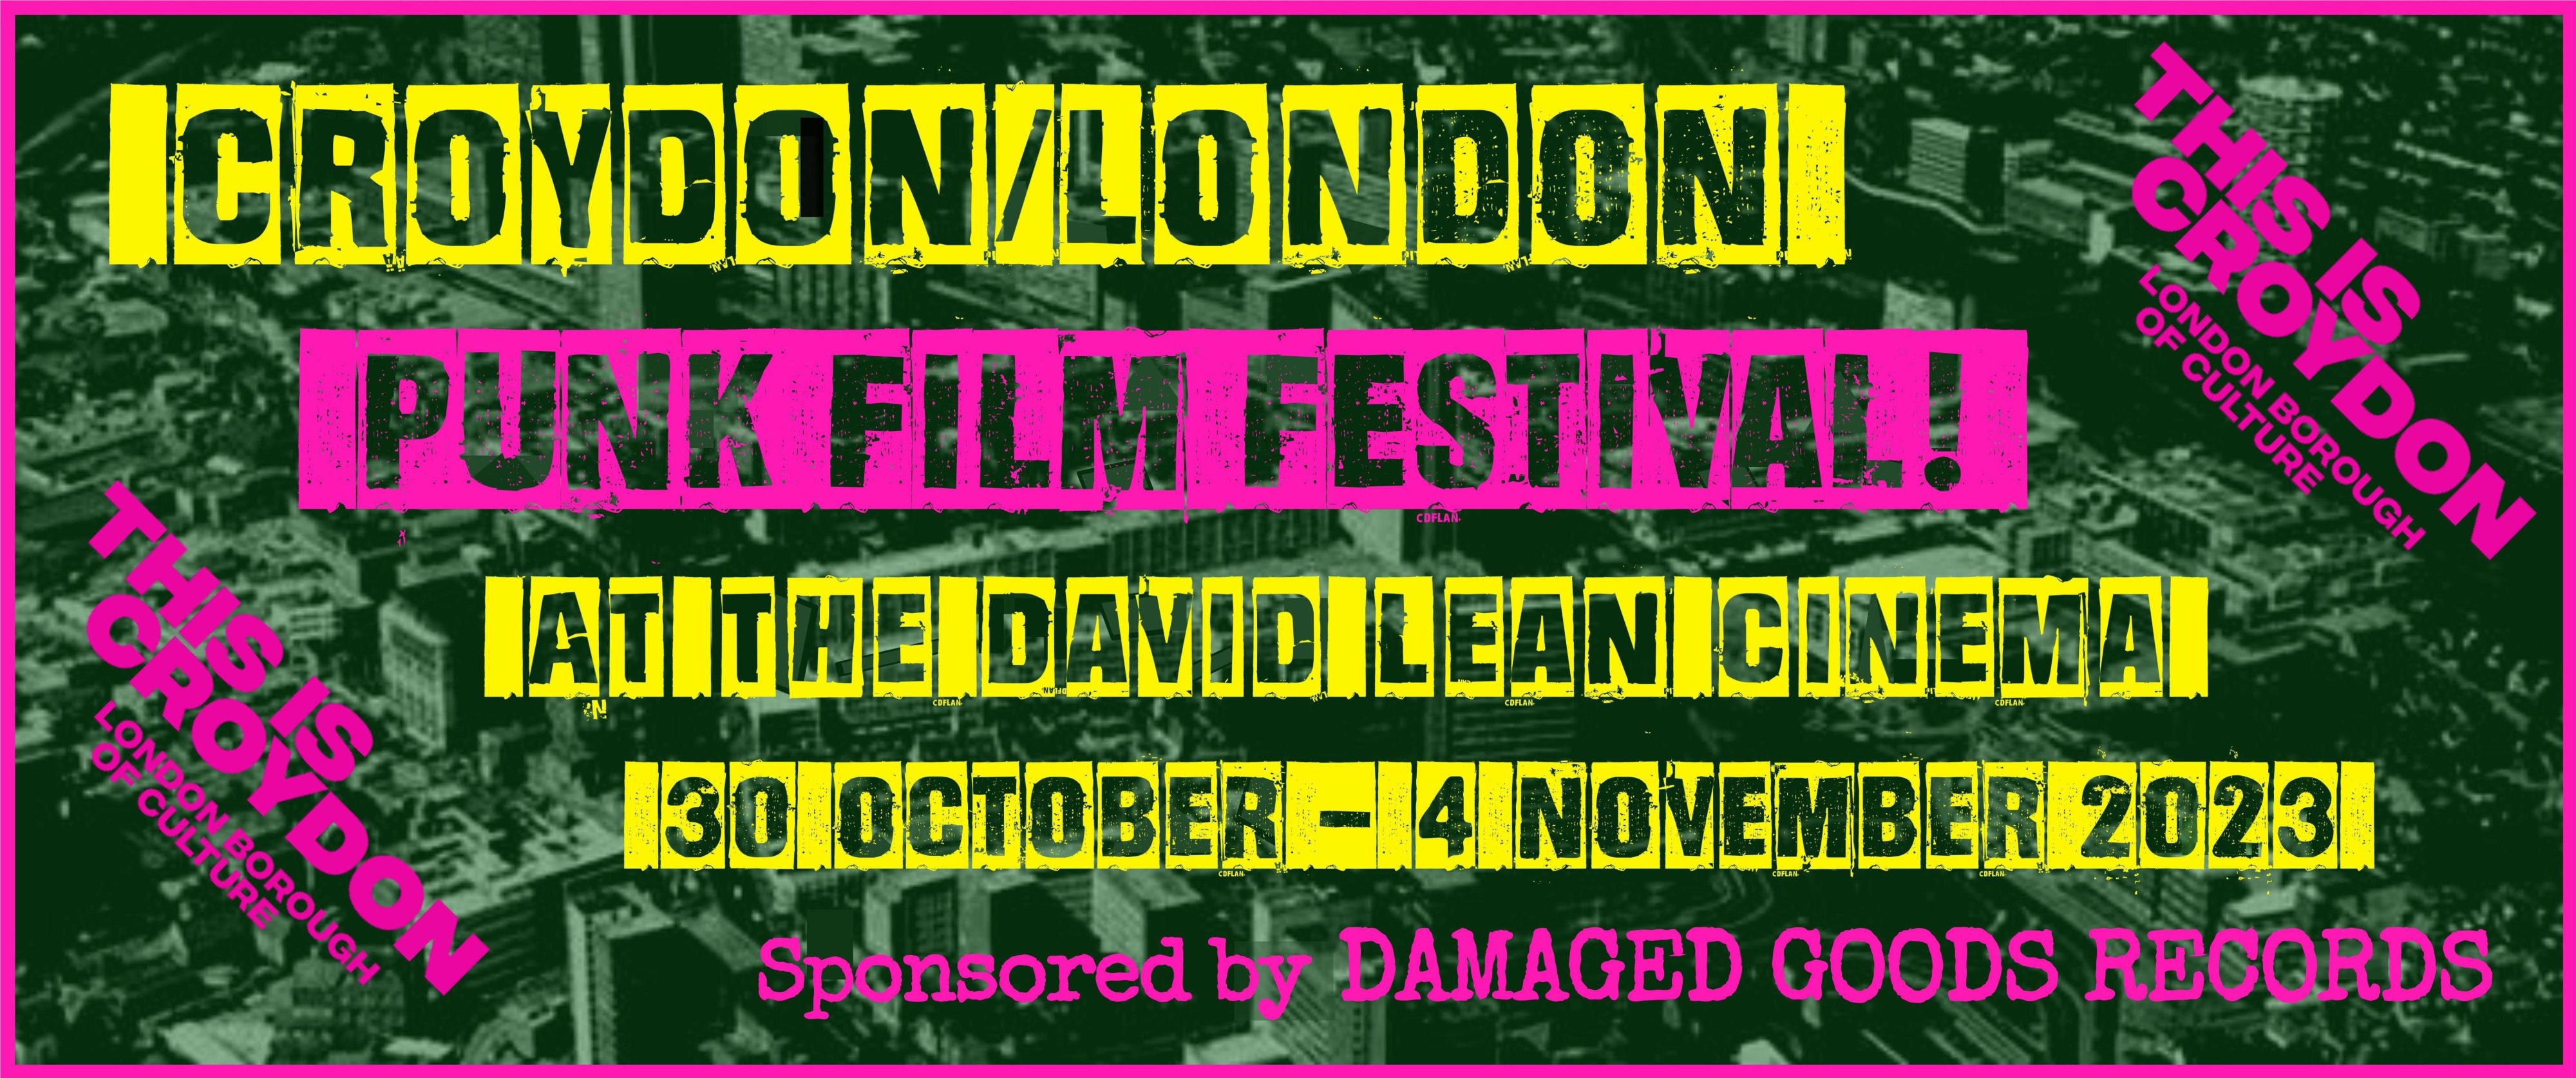 Poster for Punk Film Festival